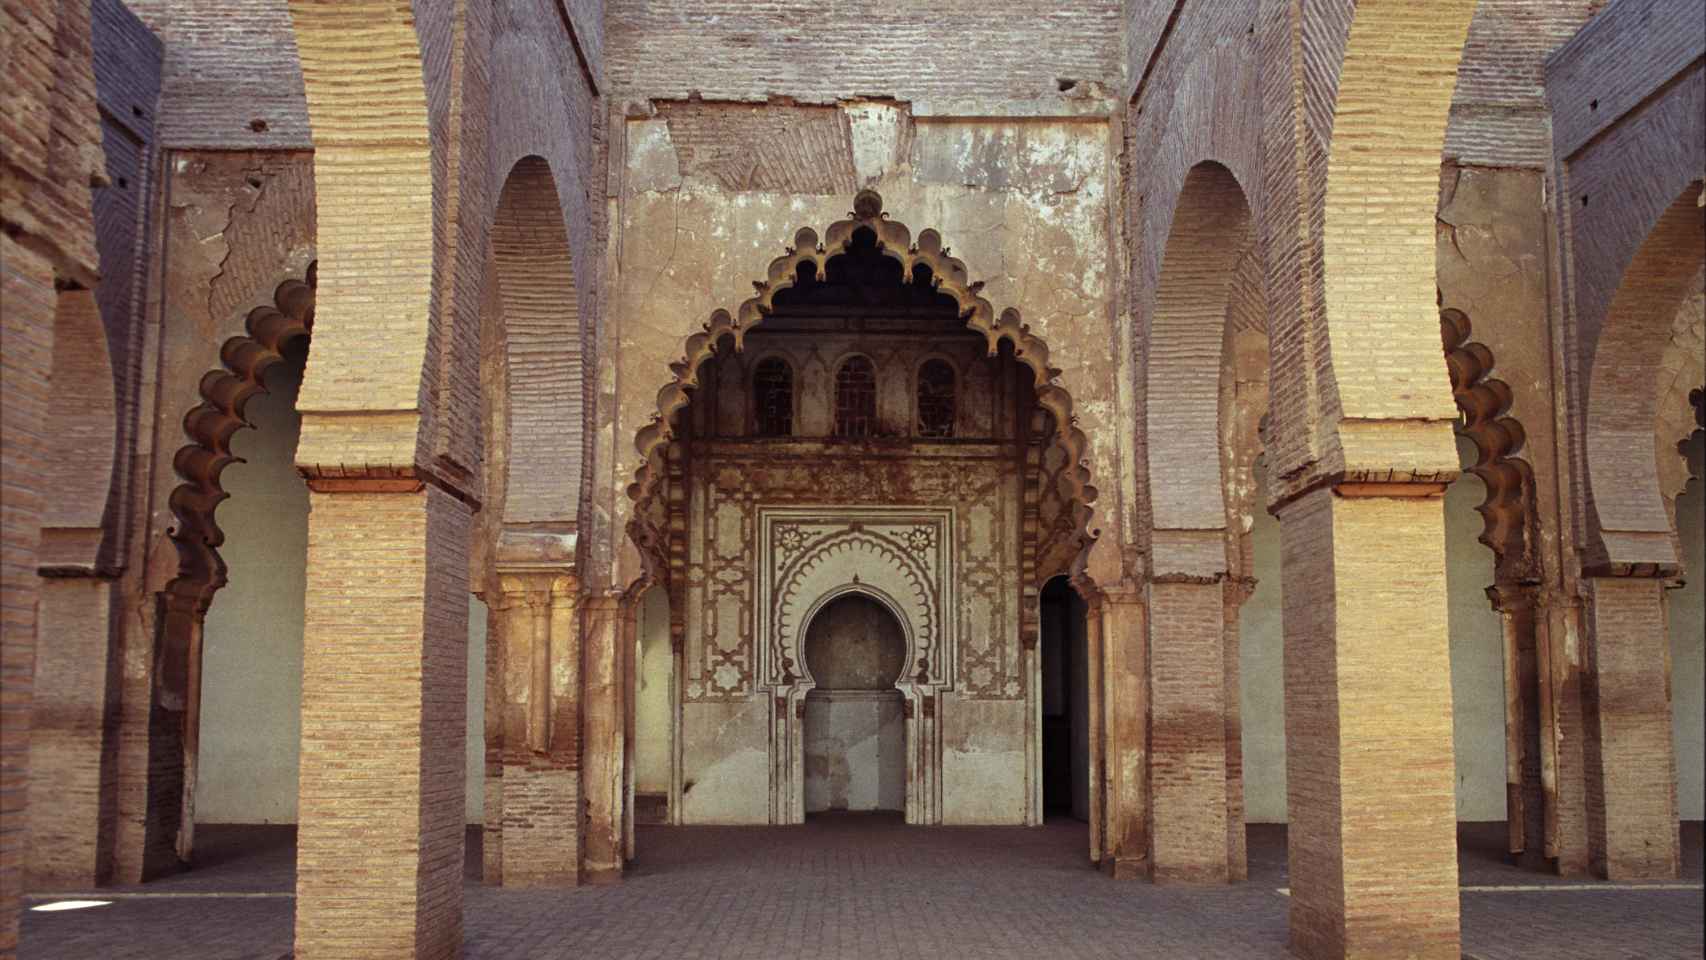 Vista del interior de la mezquita antes del terremoto. Foto: Jerzy Strzelecki